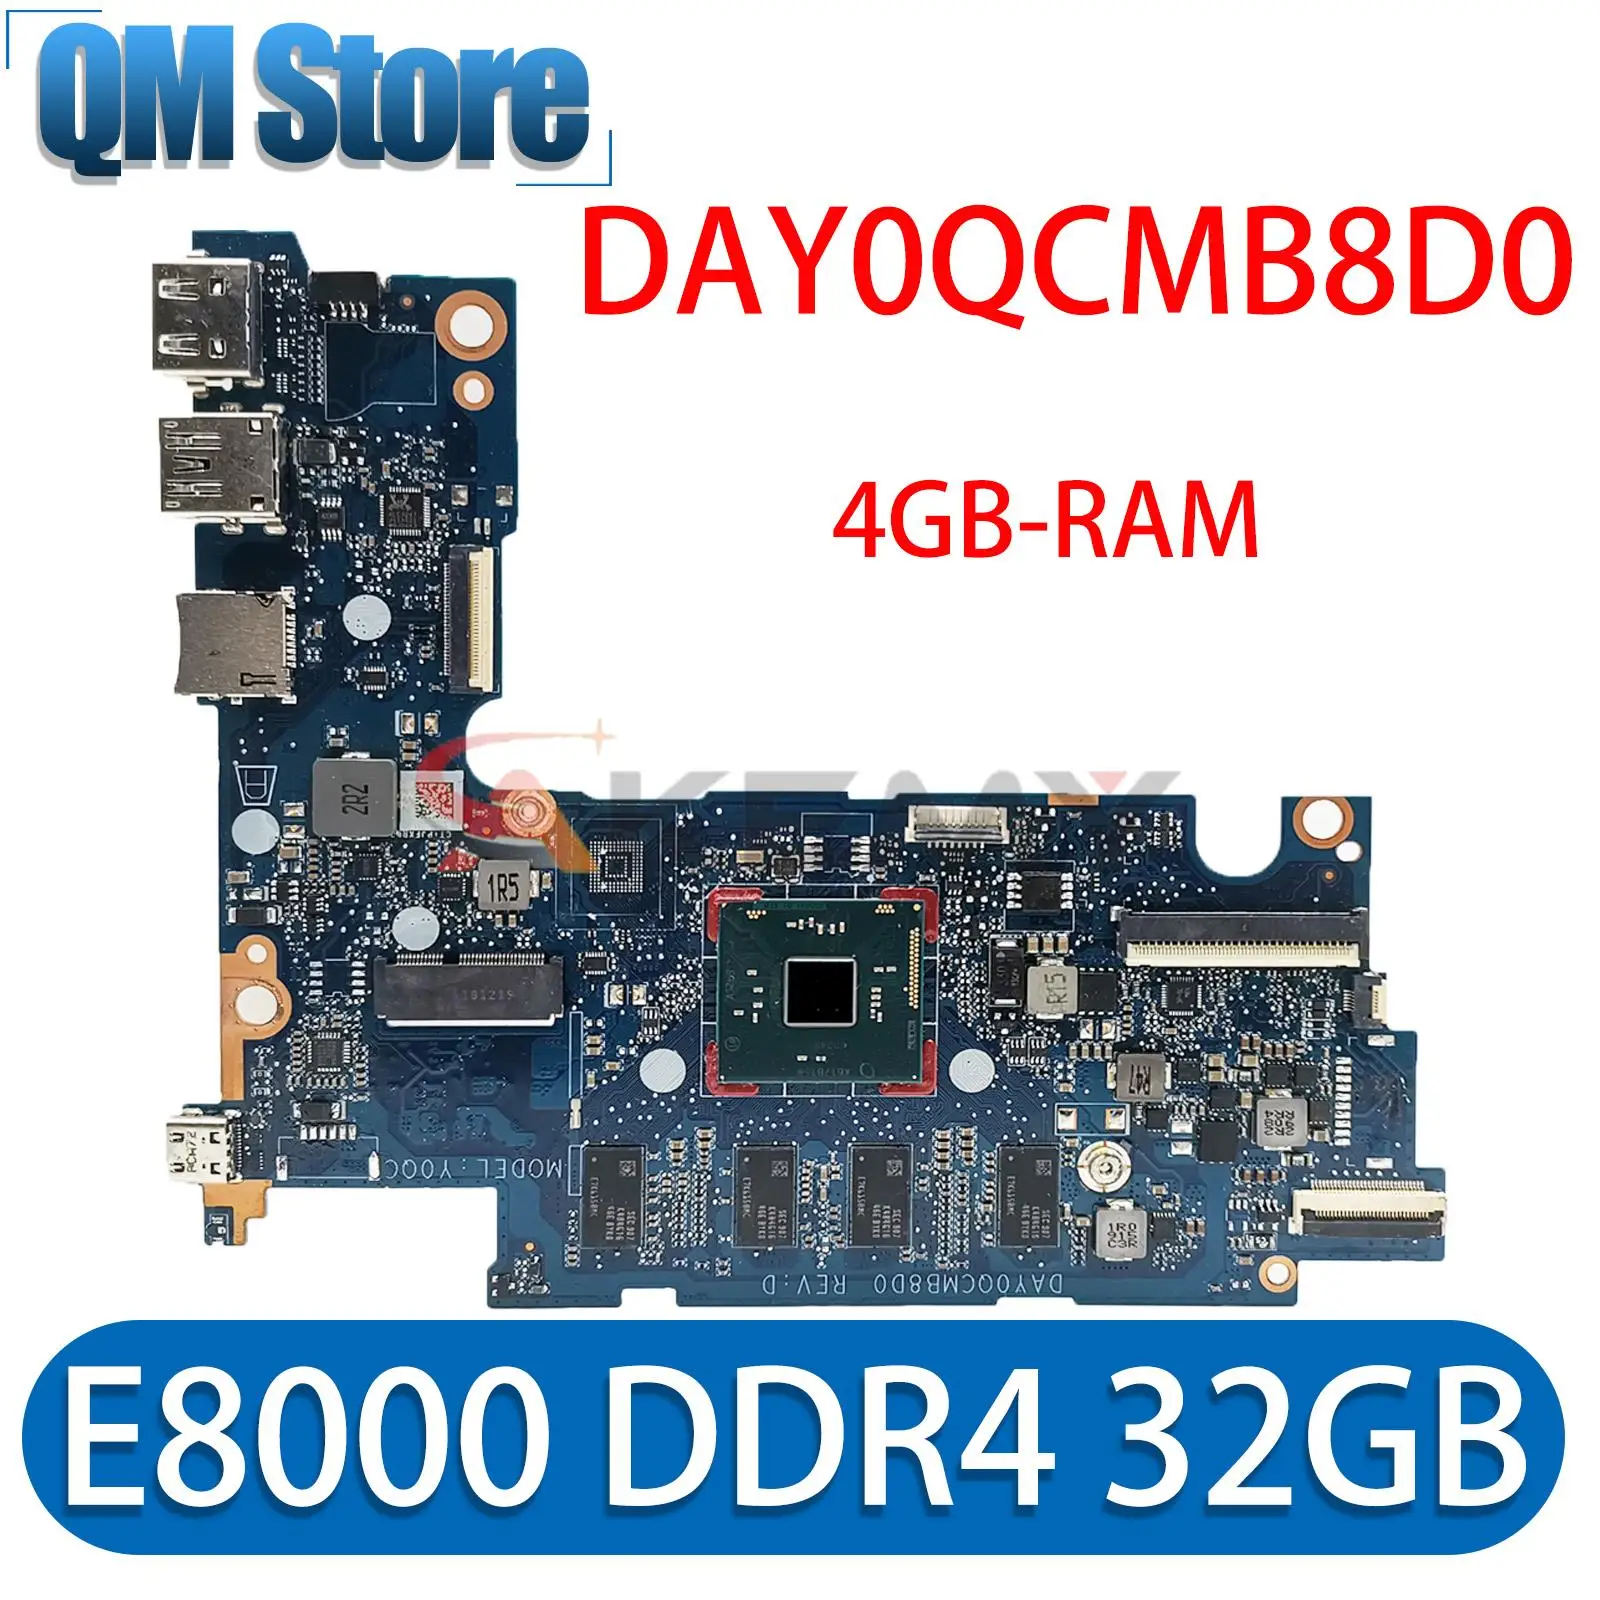 

For HP Stream 11-ak Y0QC Laptop PC Motherboard Intel Atom x5 E8000 DDR4 4GB RAM 32GB eMMC DAY0QCMB8D0 Notebook Mainboard